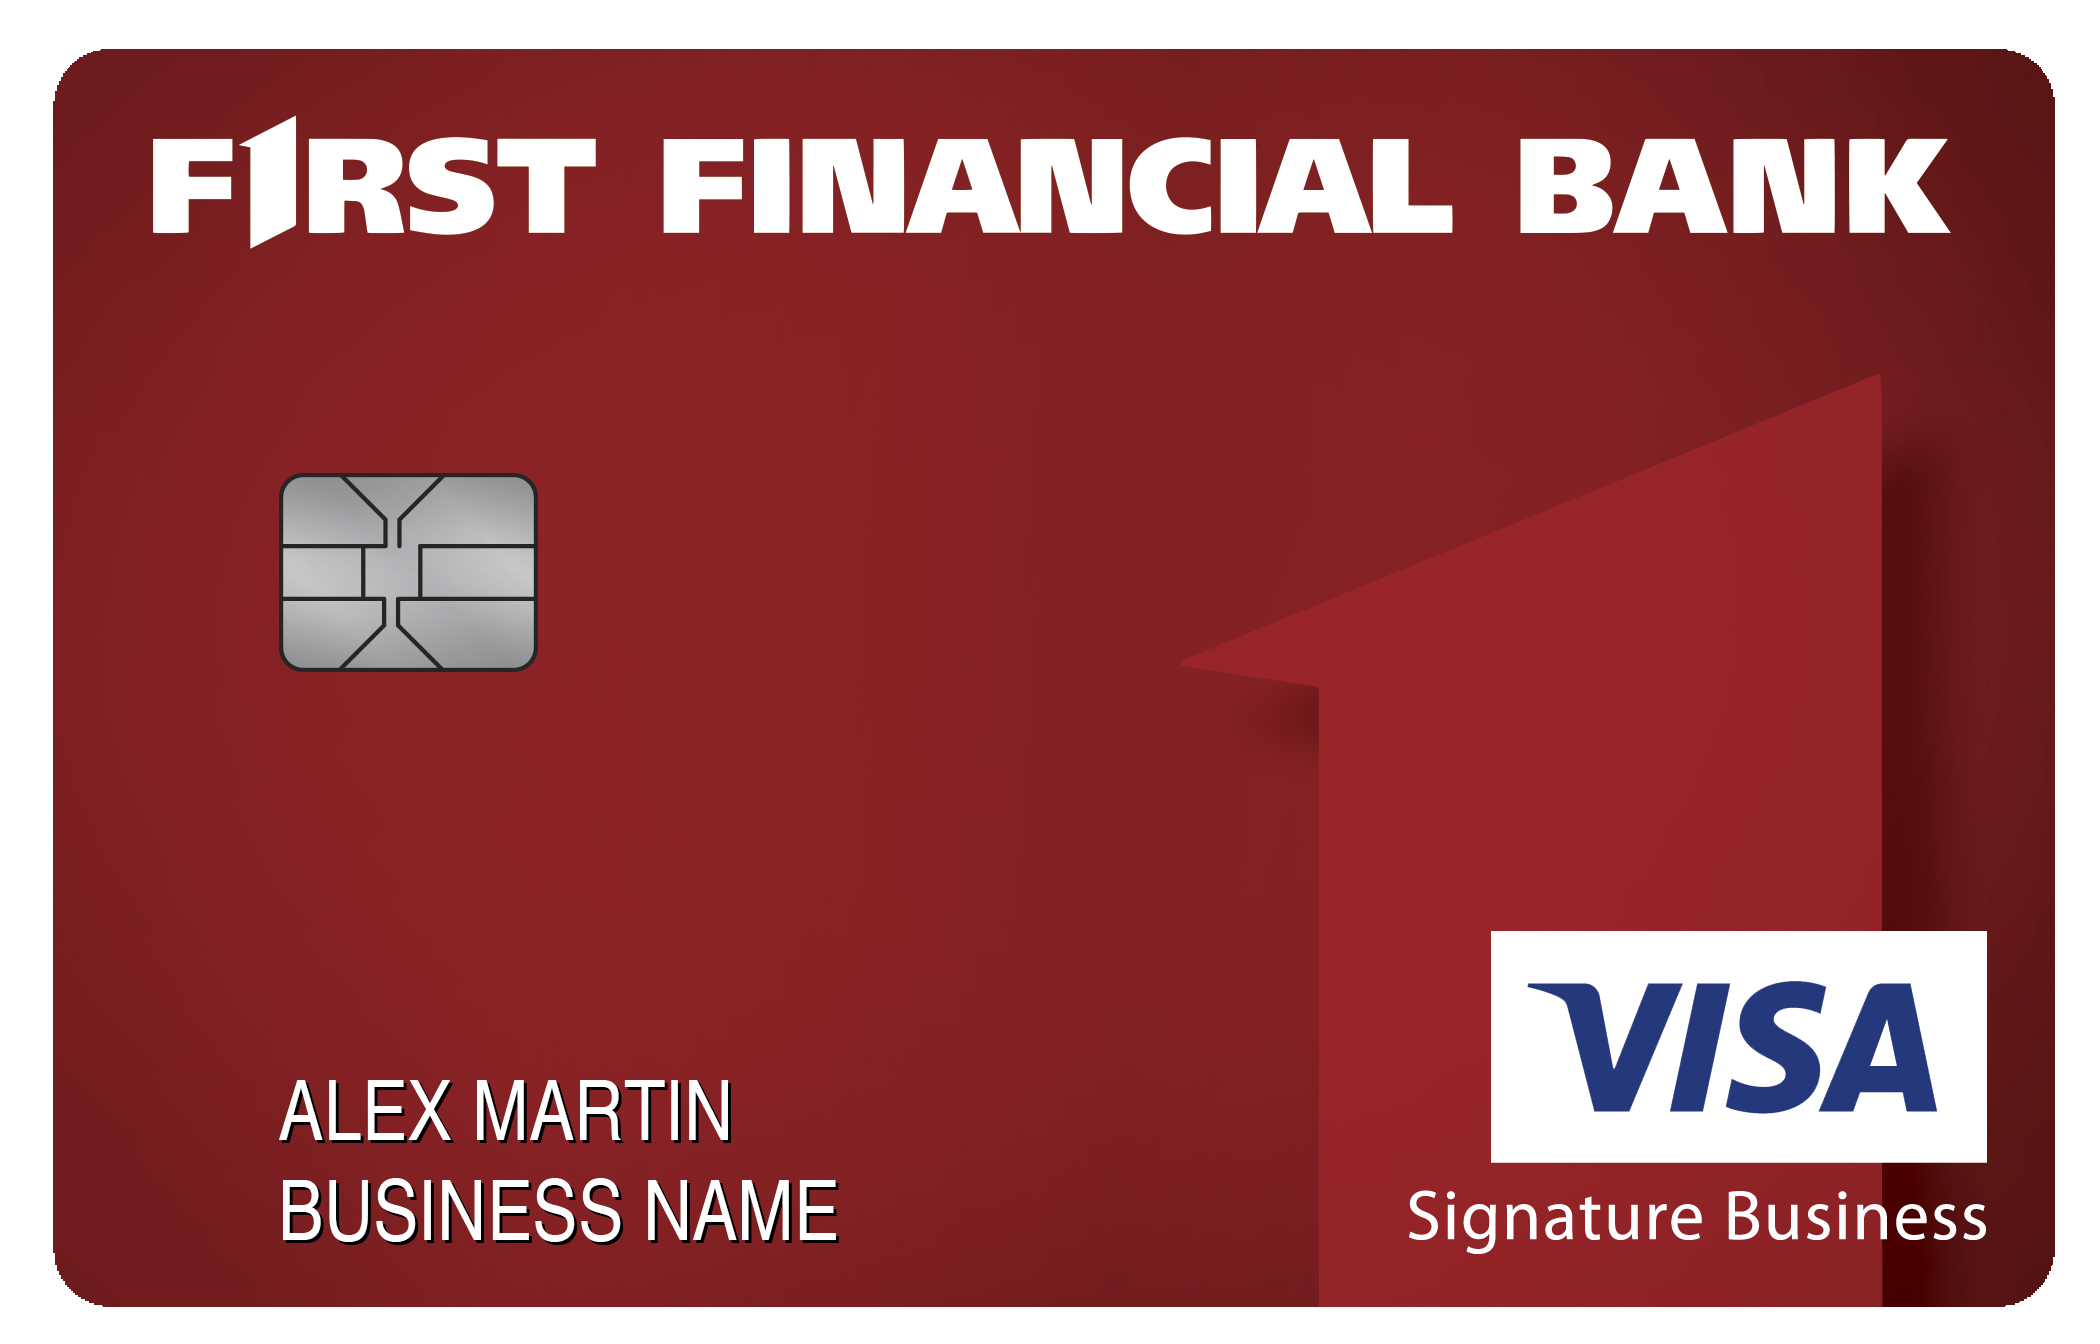 First Financial Bank Smart Business Rewards Card